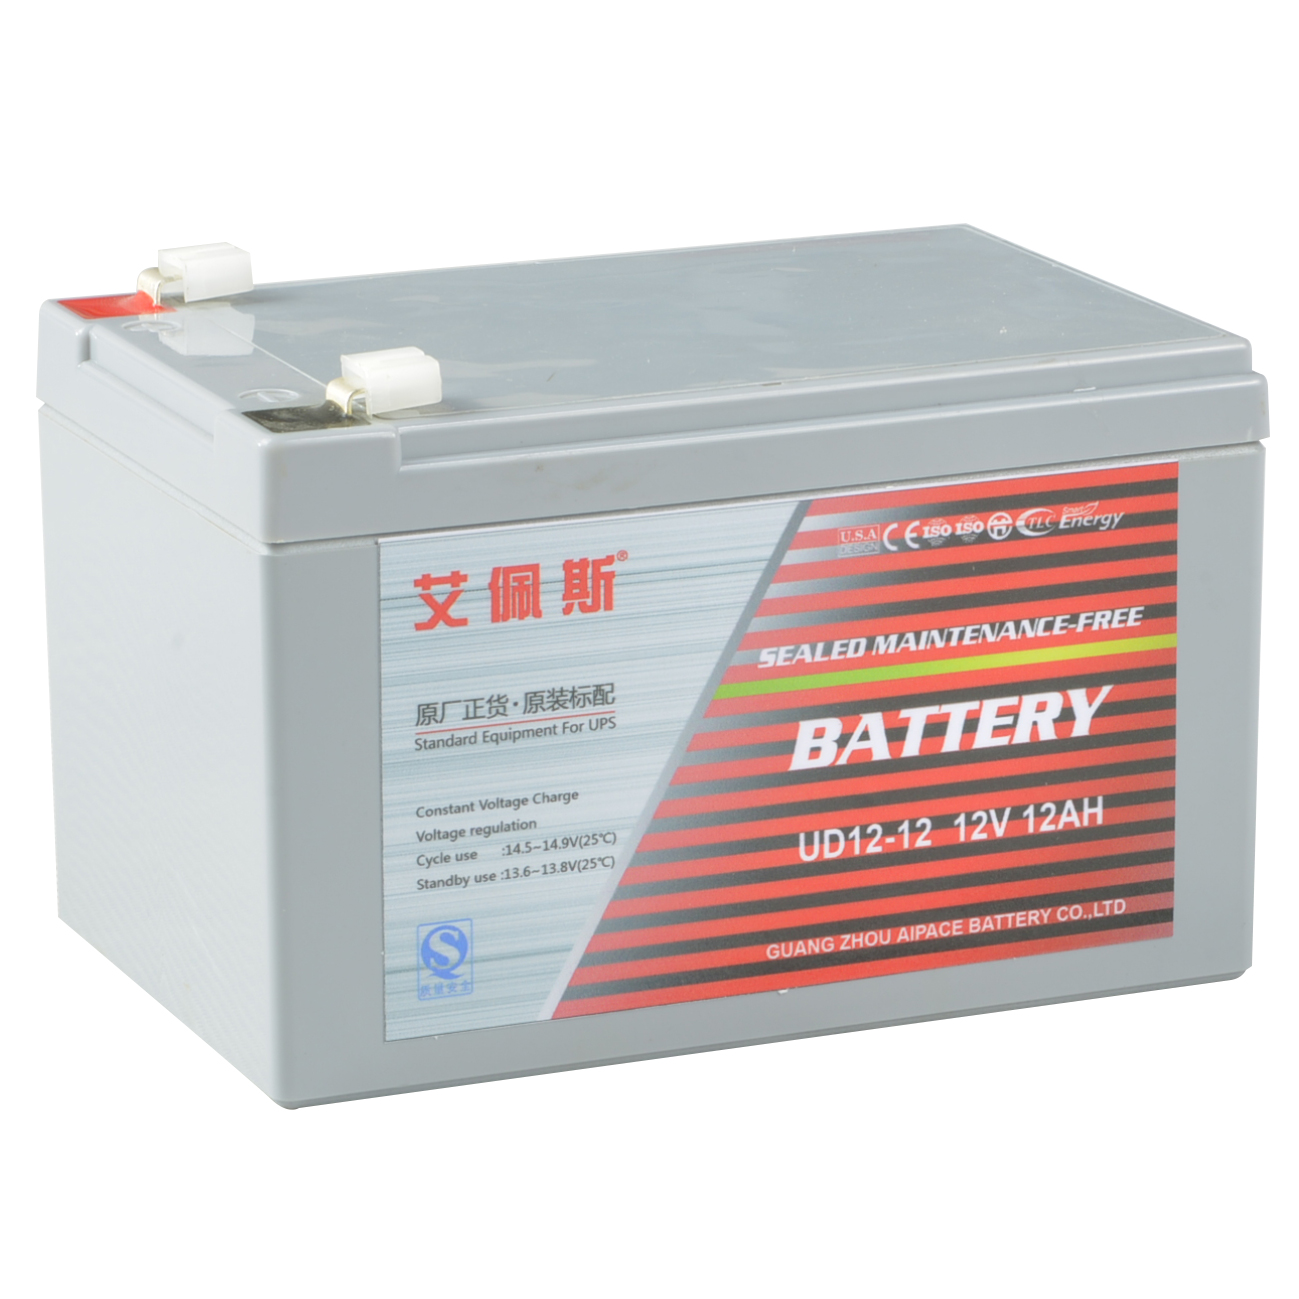 艾佩斯蓄电池UD12-12 艾佩斯蓄电池价格参数